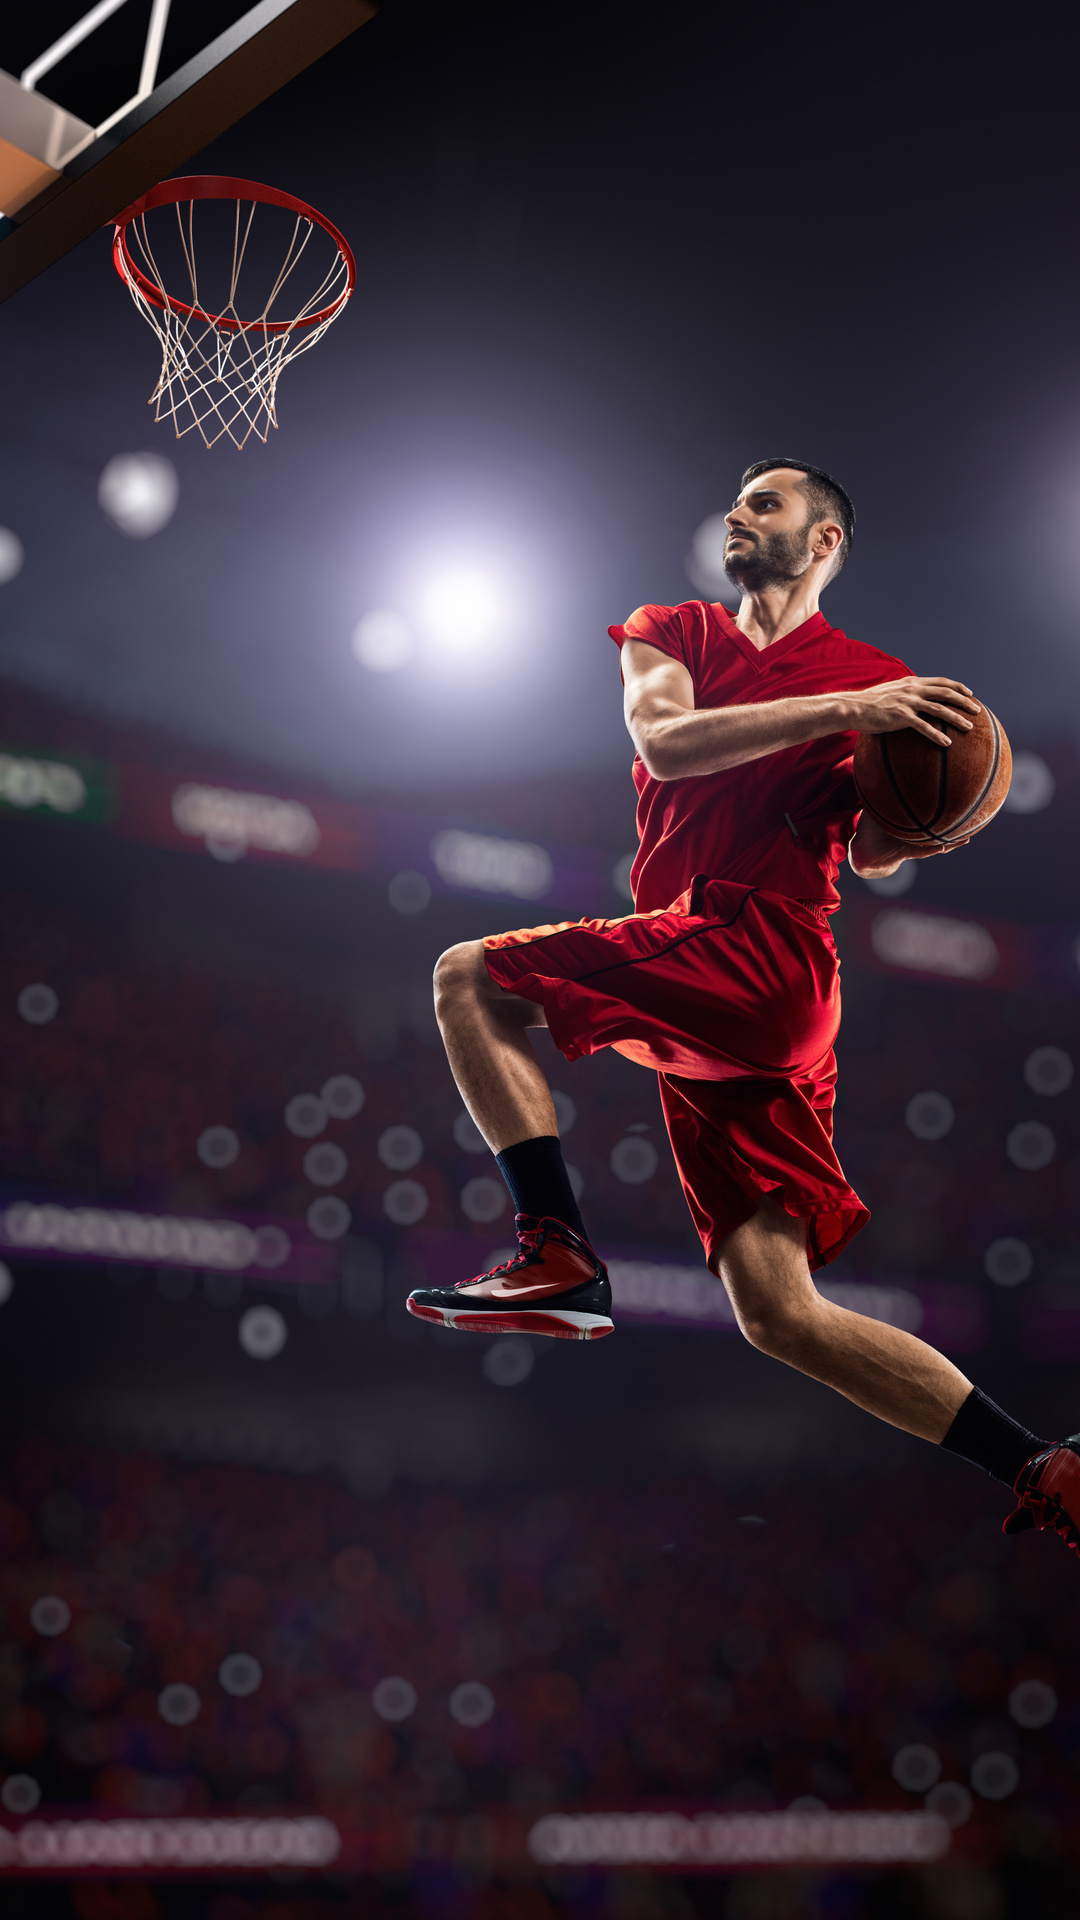 basketball-man-jumping-playing-8k-h4.jpg